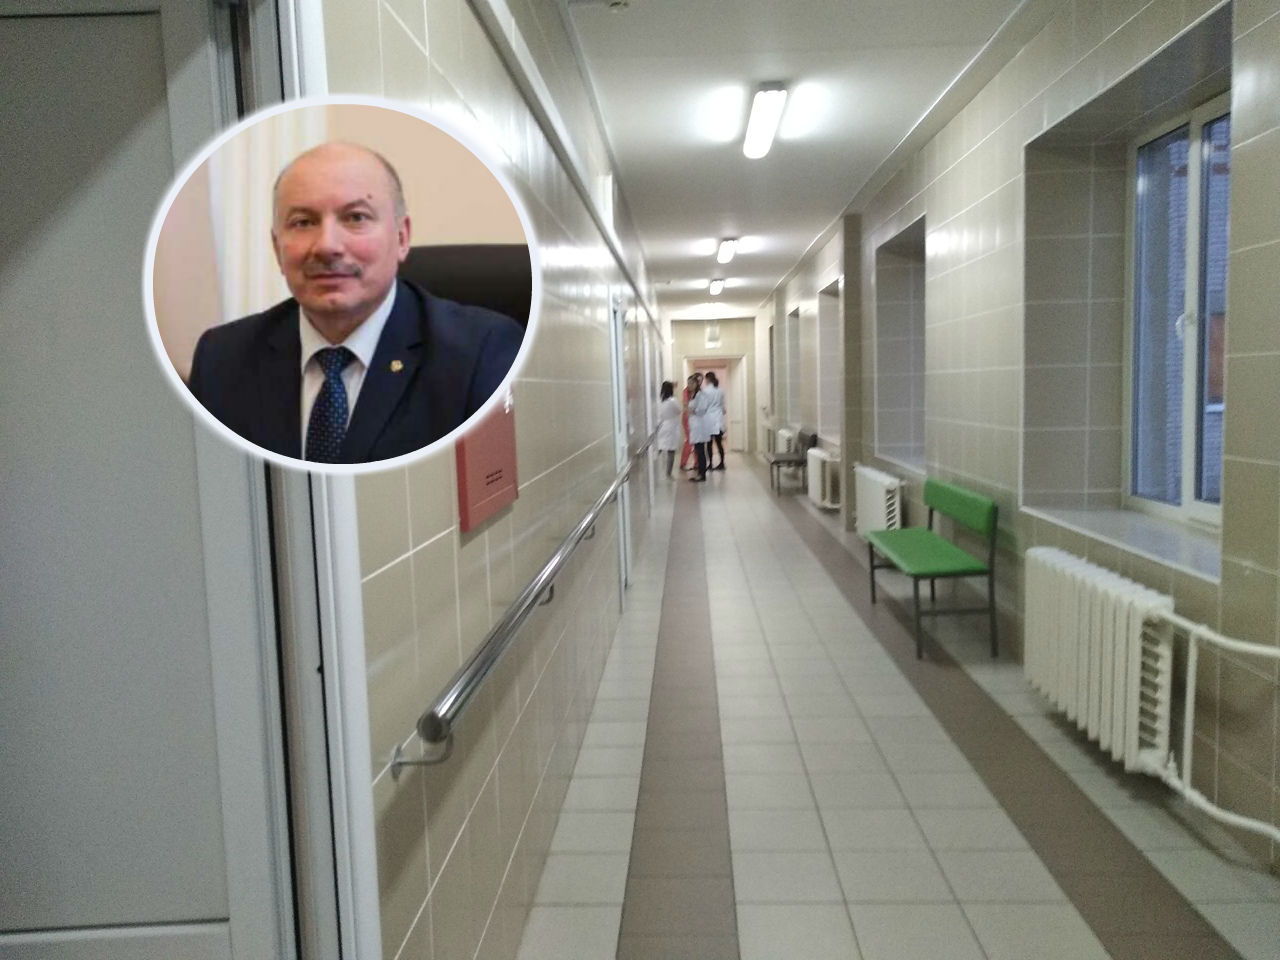 "Мужчина с COVID-19 приезжал из Оренбурга": глава Угличского района рассказал о ситуации с коронавирусом